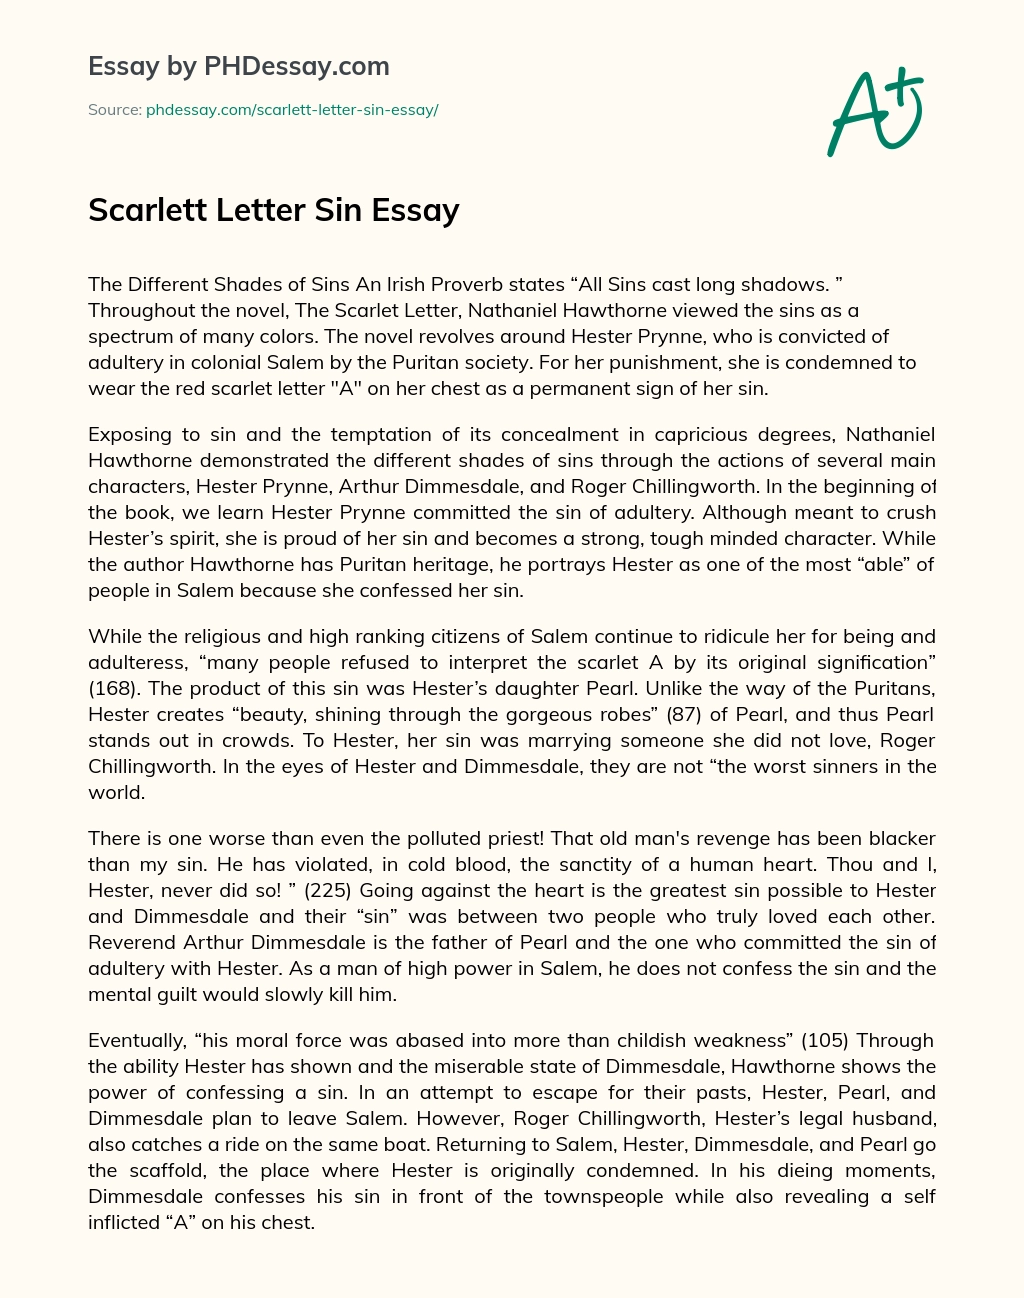 Scarlett Letter Sin Essay essay